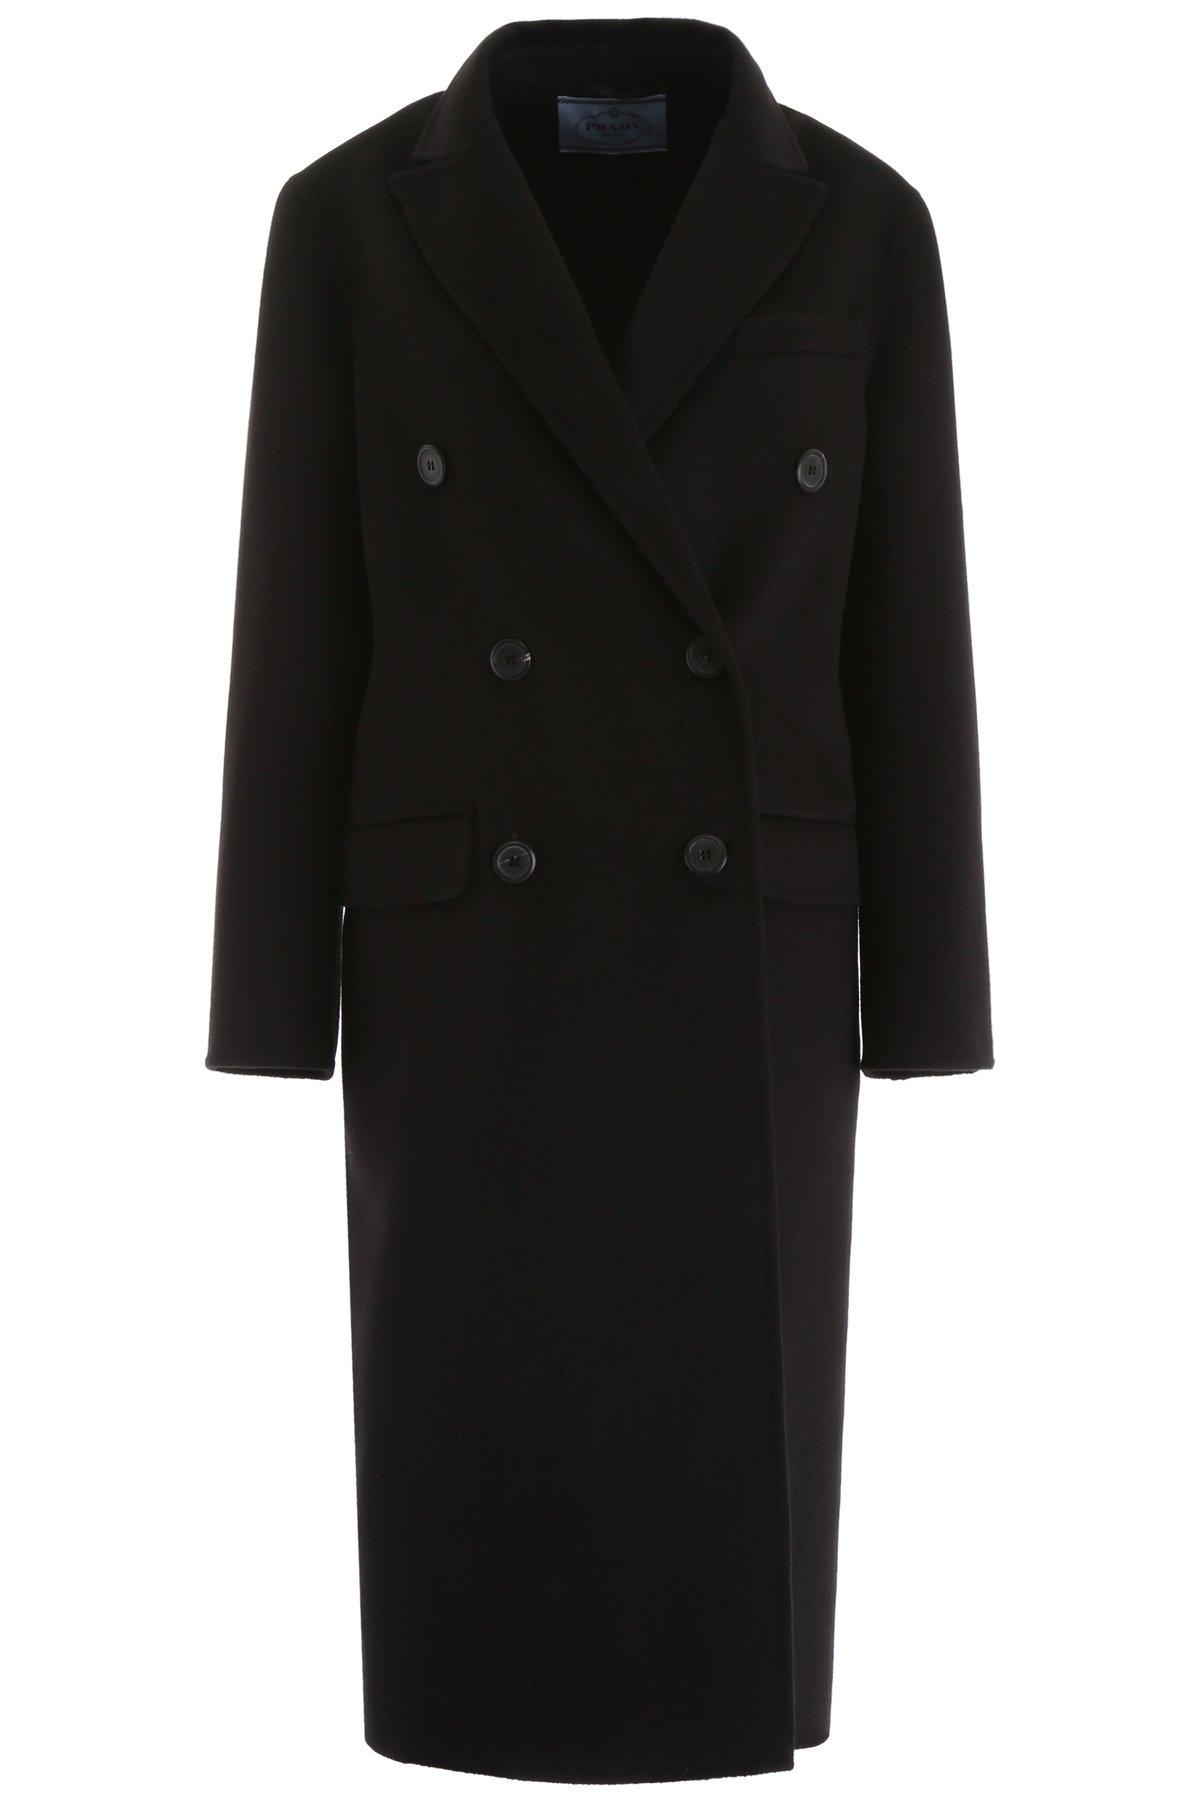 Prada Wool Cashgora Coat in Black - Lyst